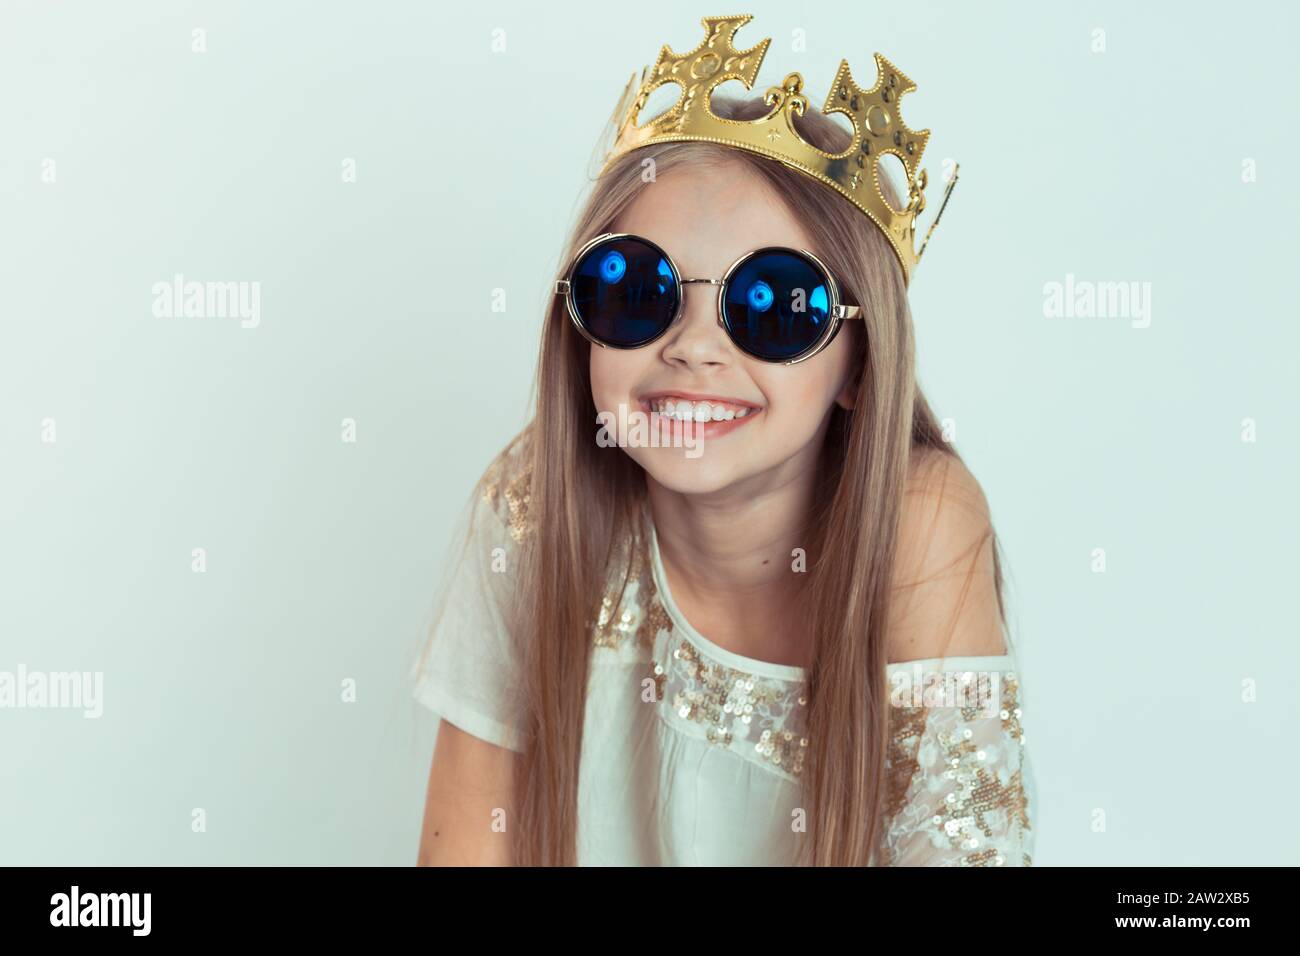 Ragazza giovane con un sorriso carino che indossa una corona, occhiali da  sole a forma rotonda